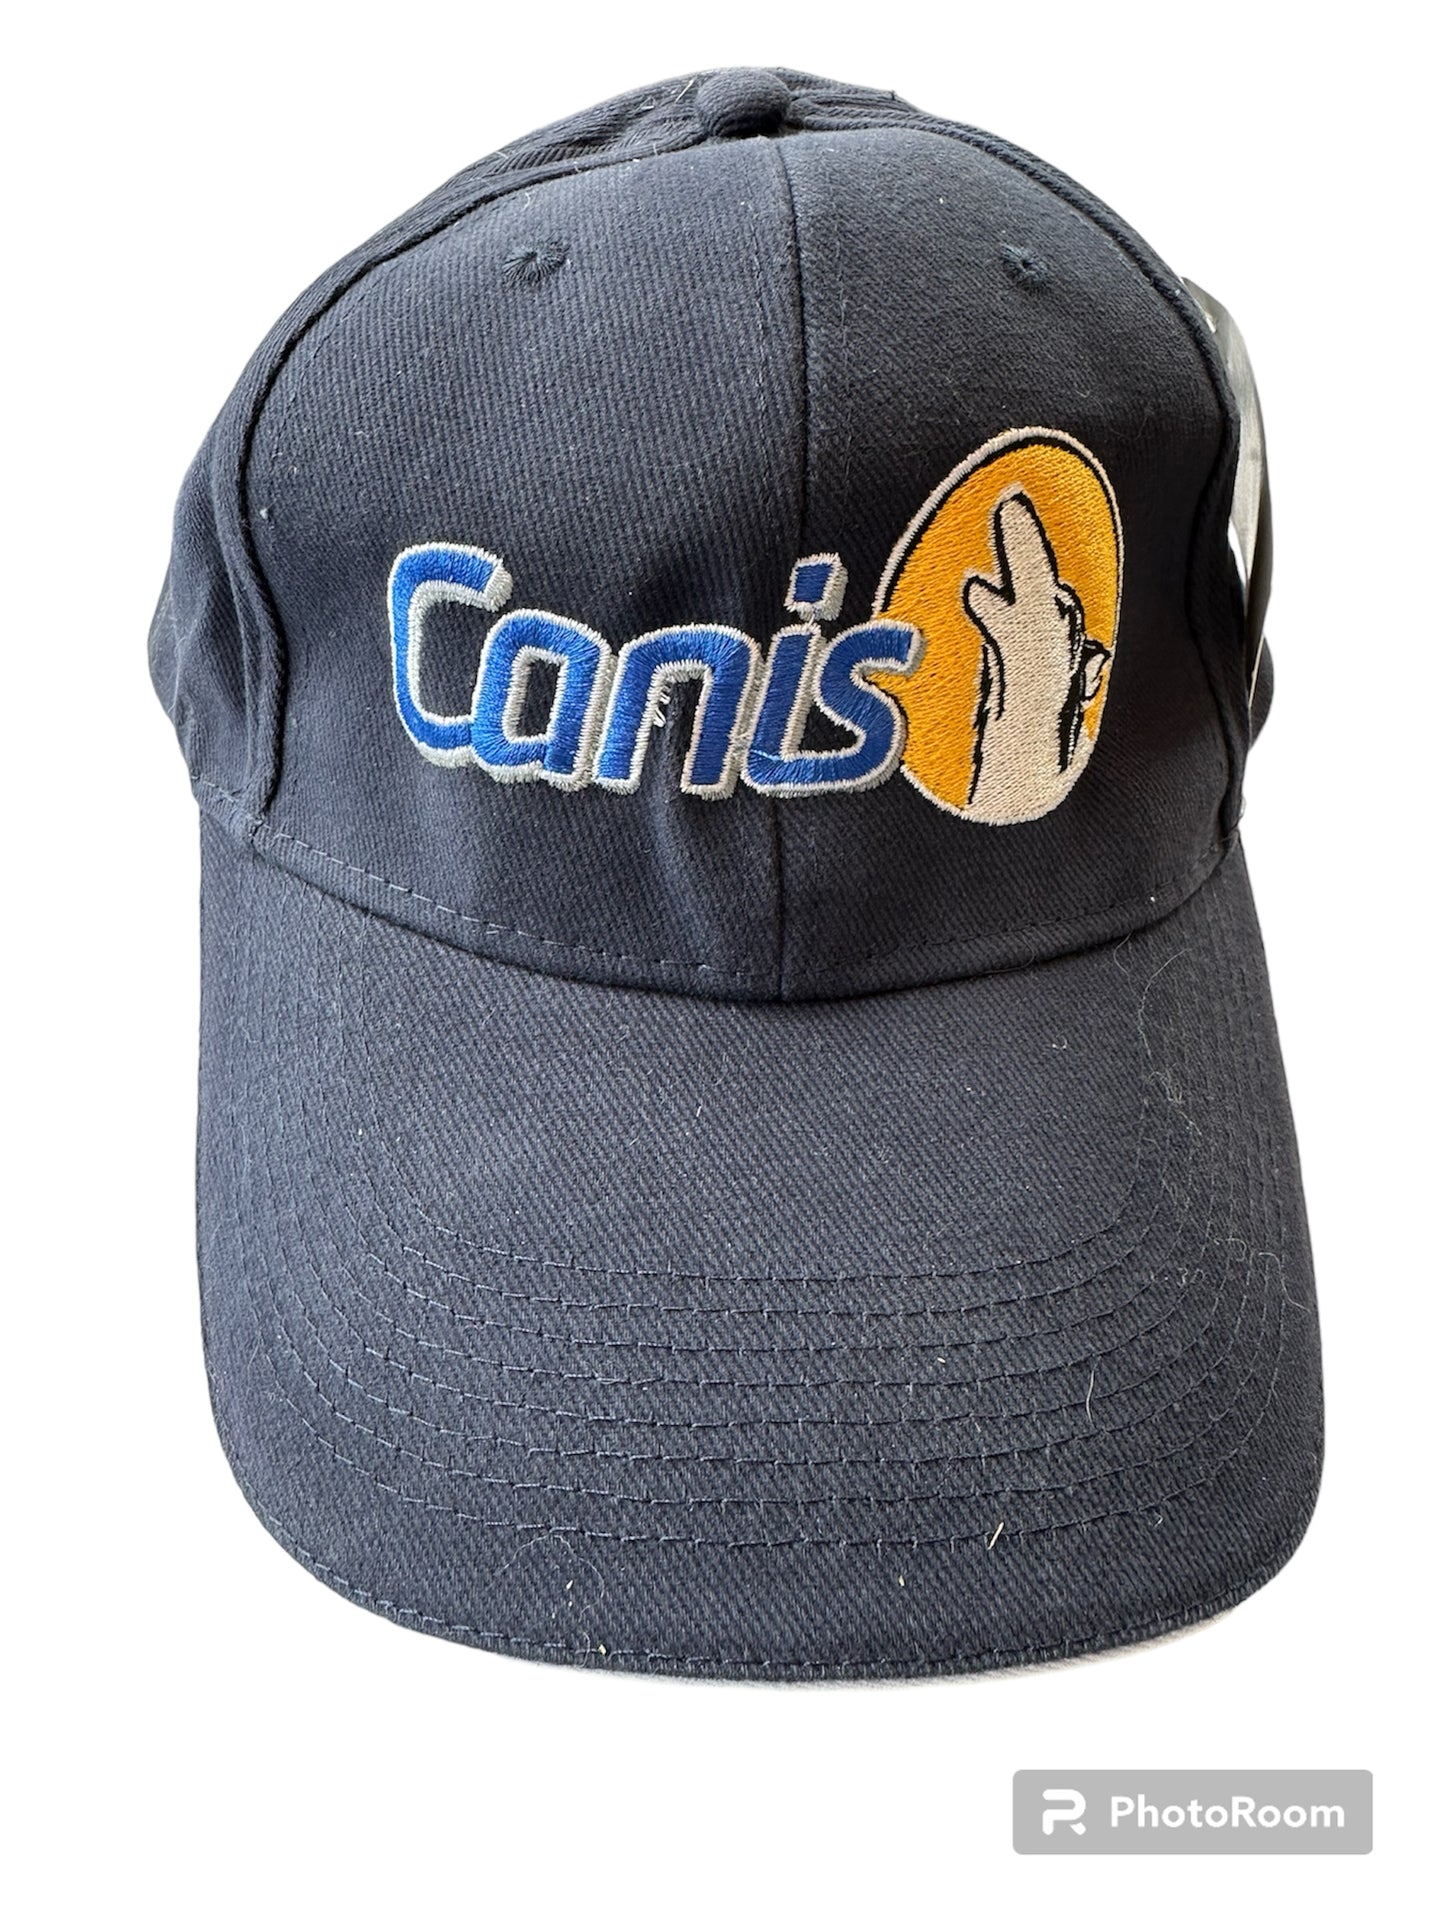  Caps med logo